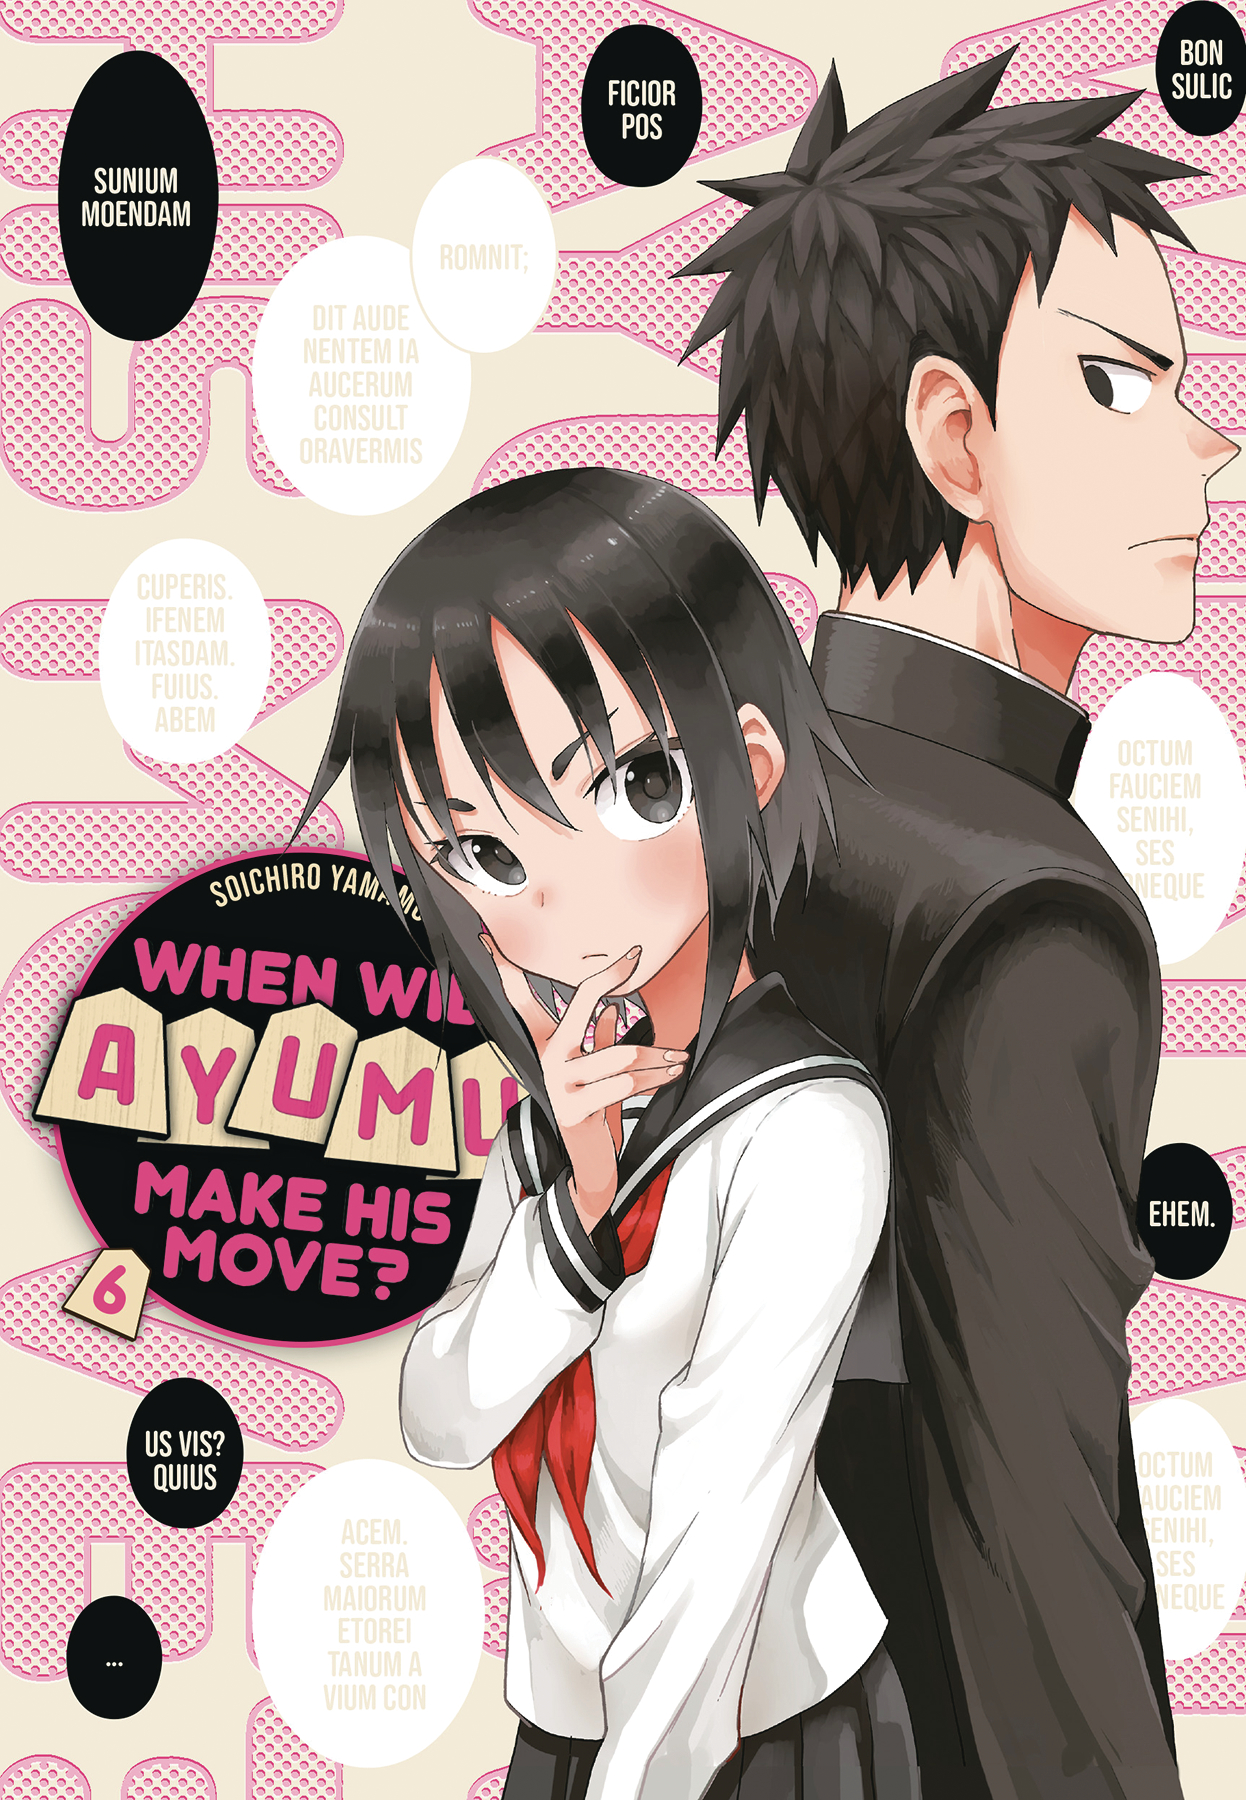 When Will Ayumu Make His Move? Manga Volume 6